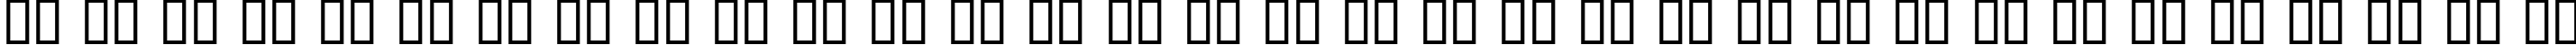 Пример написания русского алфавита шрифтом Offset Plain